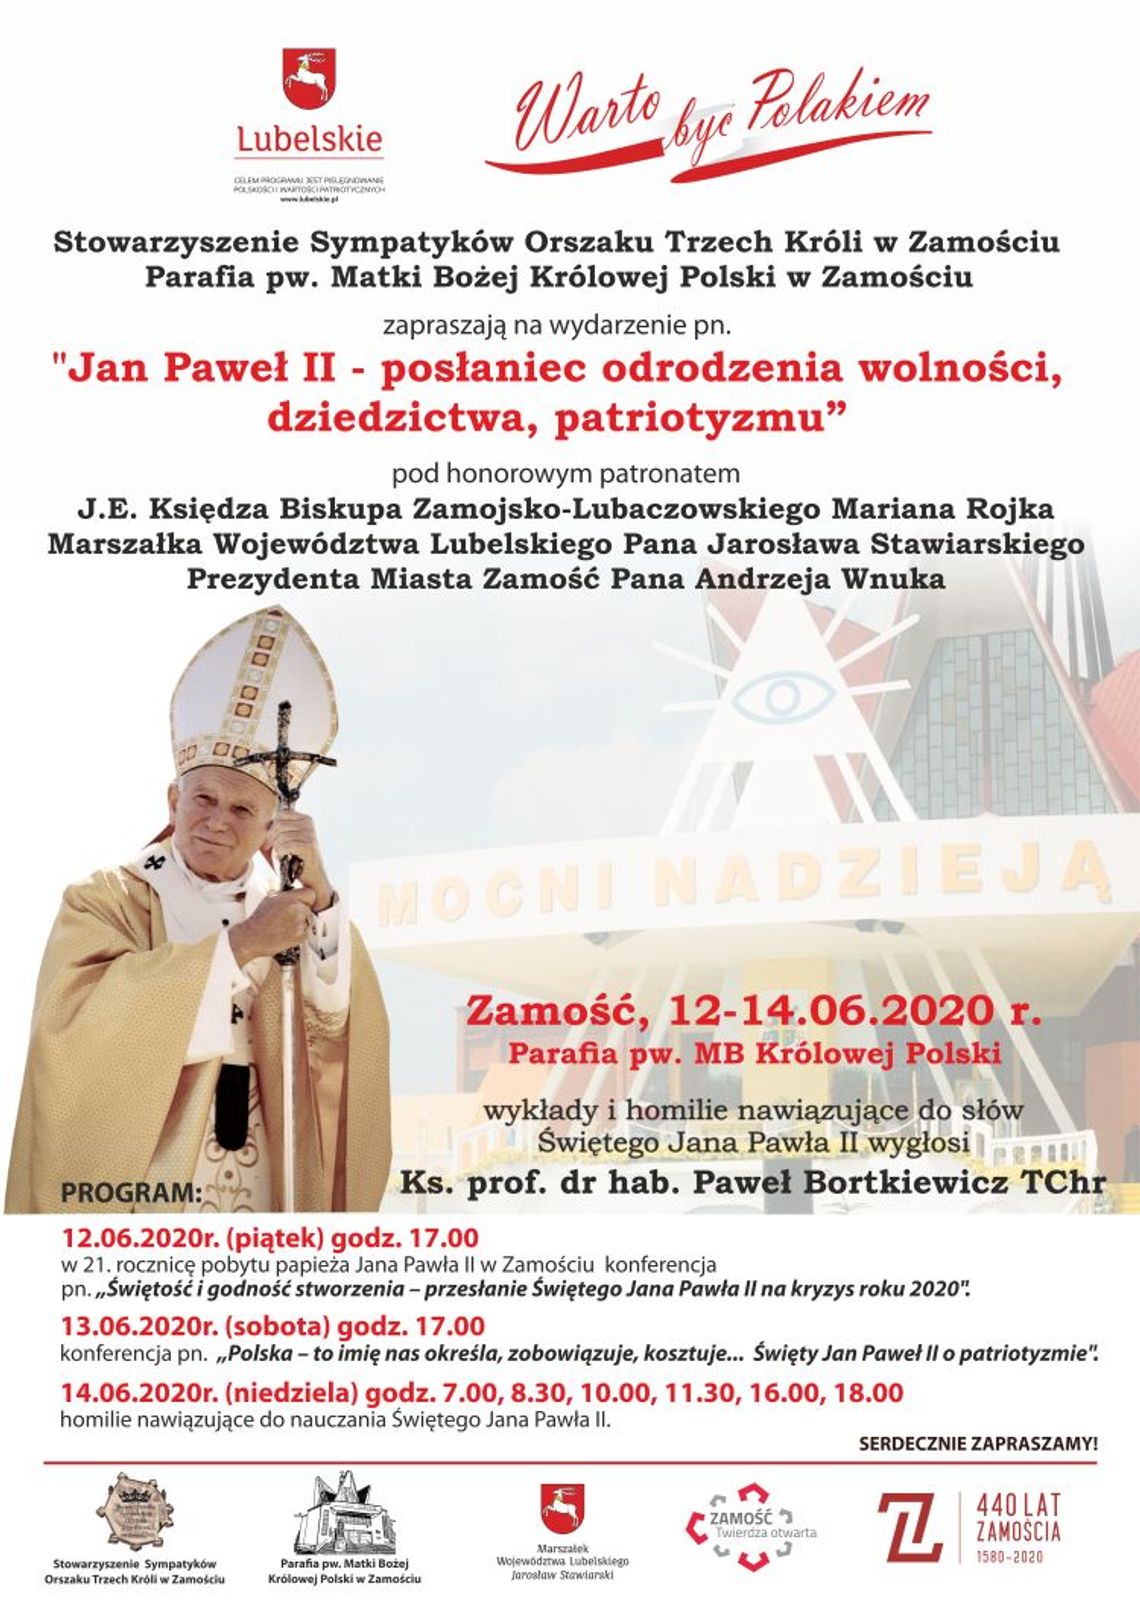 Obchody "Dnia papieskiego" w Zamościu